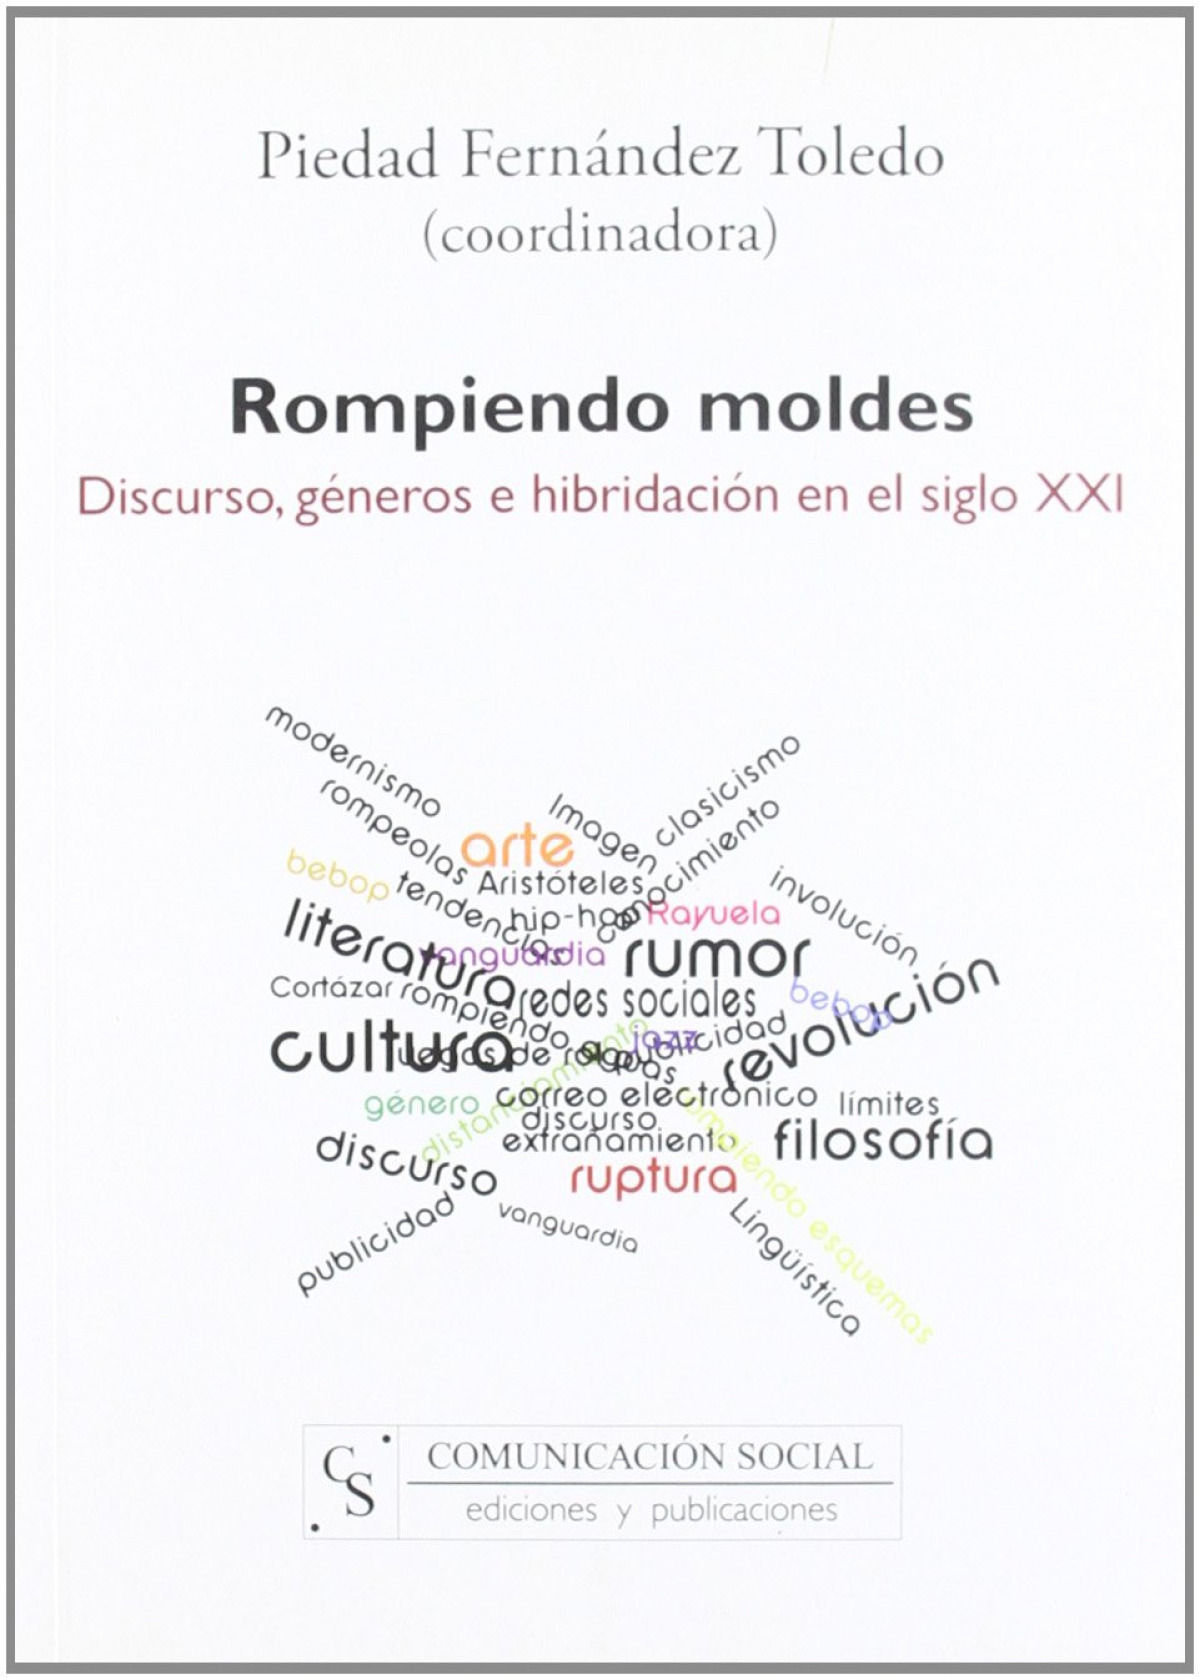 Rompiendo moldes: discurso, géneros e hibridación en el siglo XXI - Fernández Toledo, Piedad